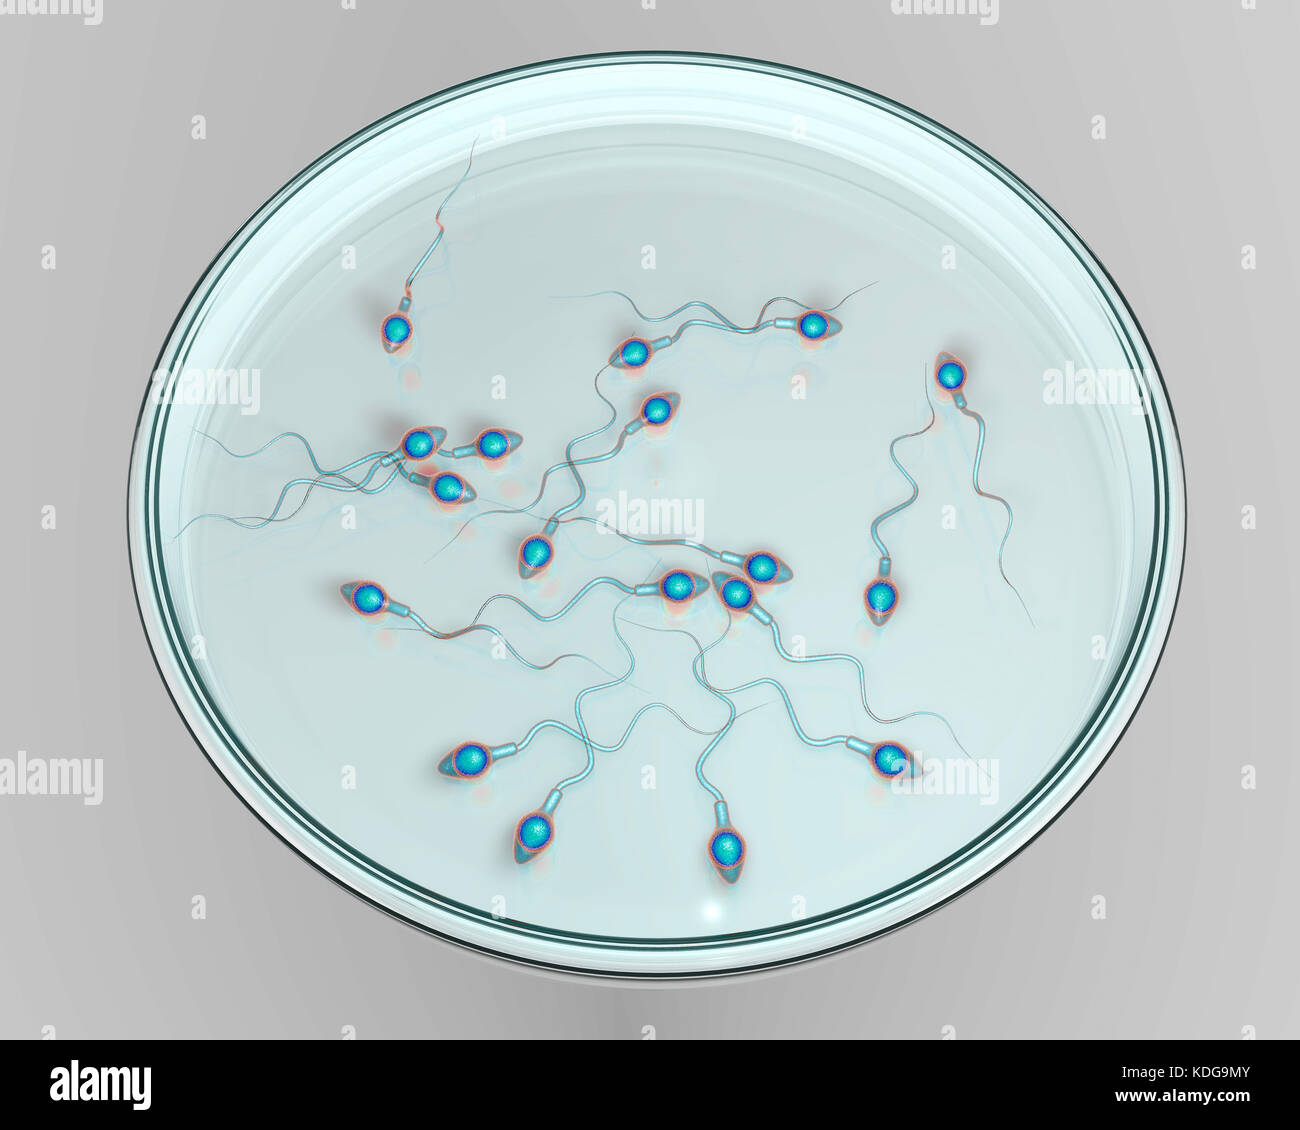 Concepto de fertilización in vitro. Ilustración que muestra el equipo en una caja de petri spermatozoans esperando a ser utilizado para fertilizar un óvulo. Foto de stock